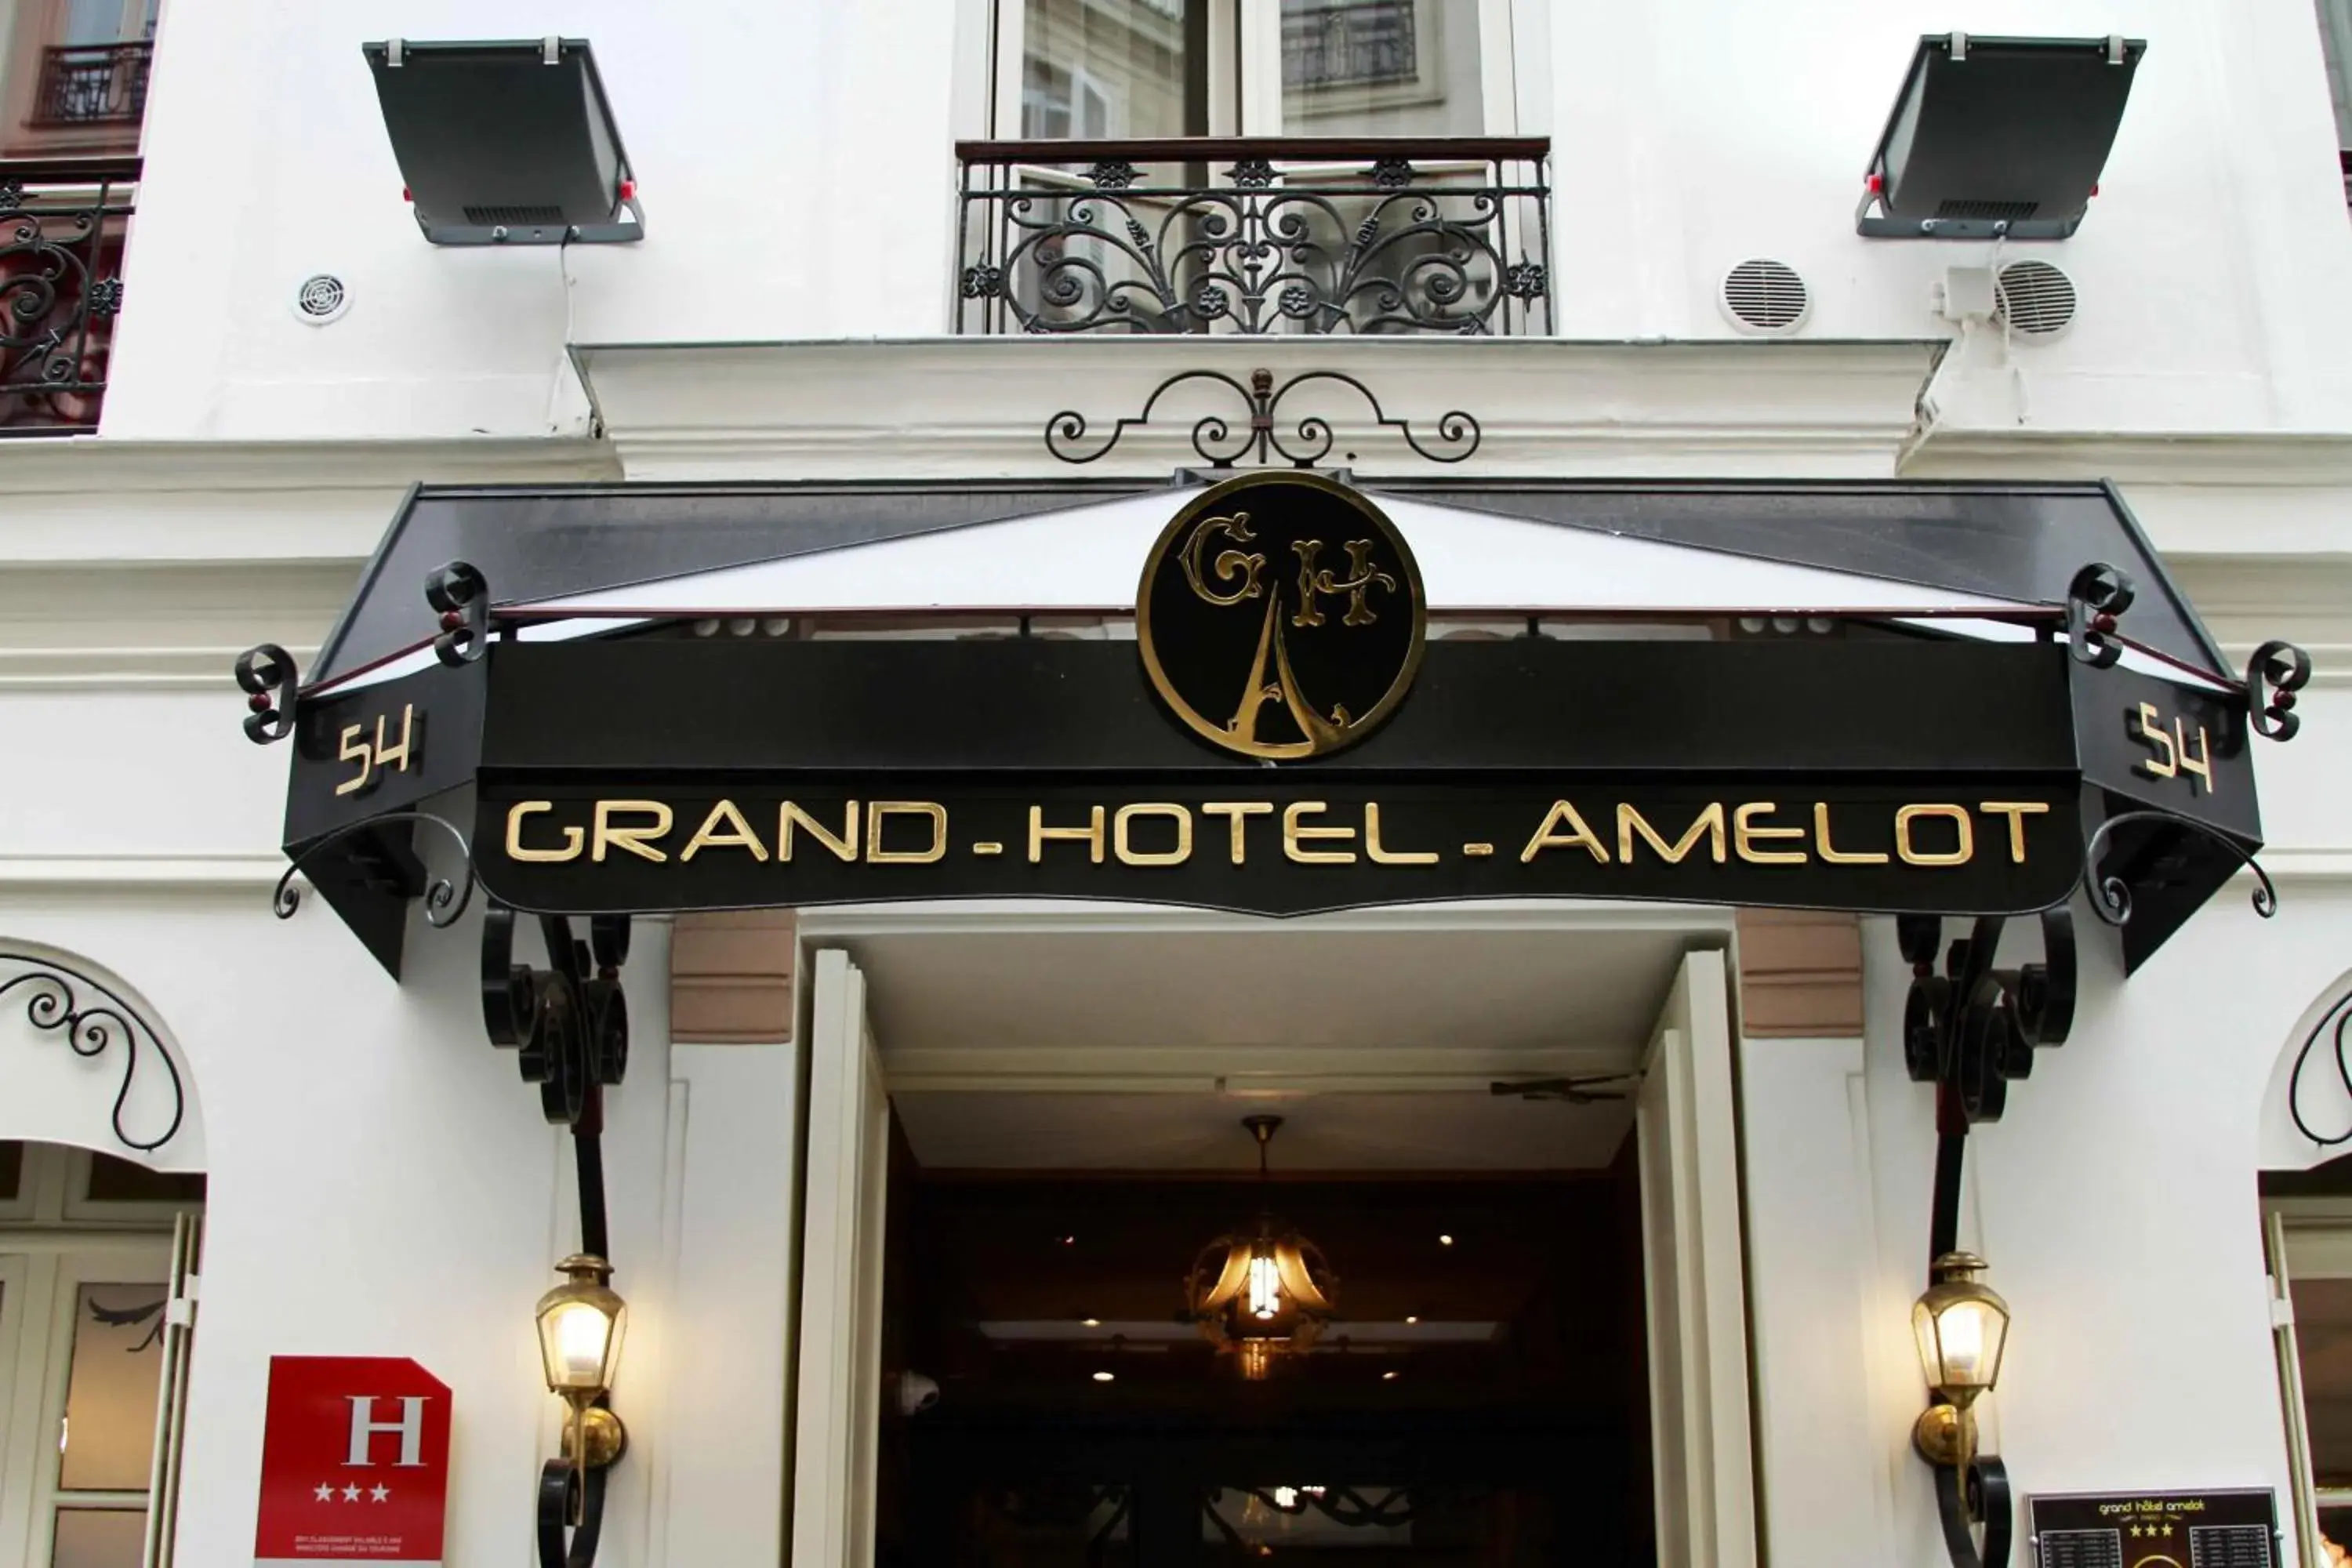 Facade/entrance in Grand Hôtel Amelot